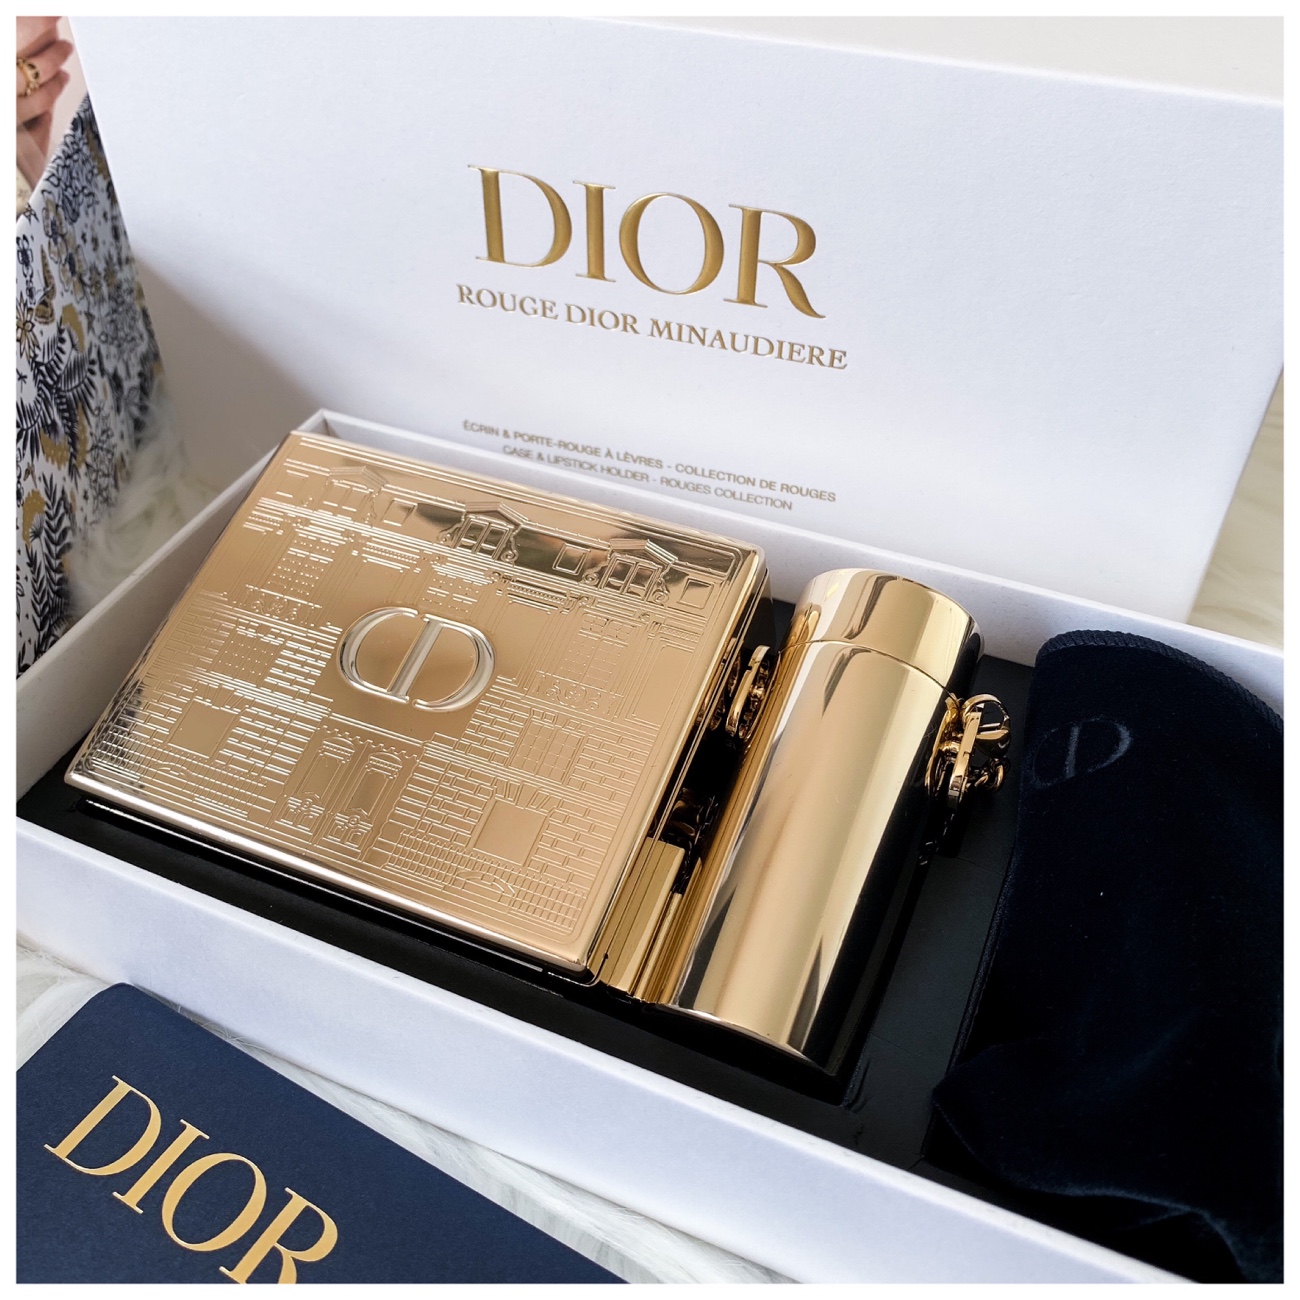 Dior Beaute Clutch Travel Pouch Lipstick Case with Mirror Lipstick Holder  Black